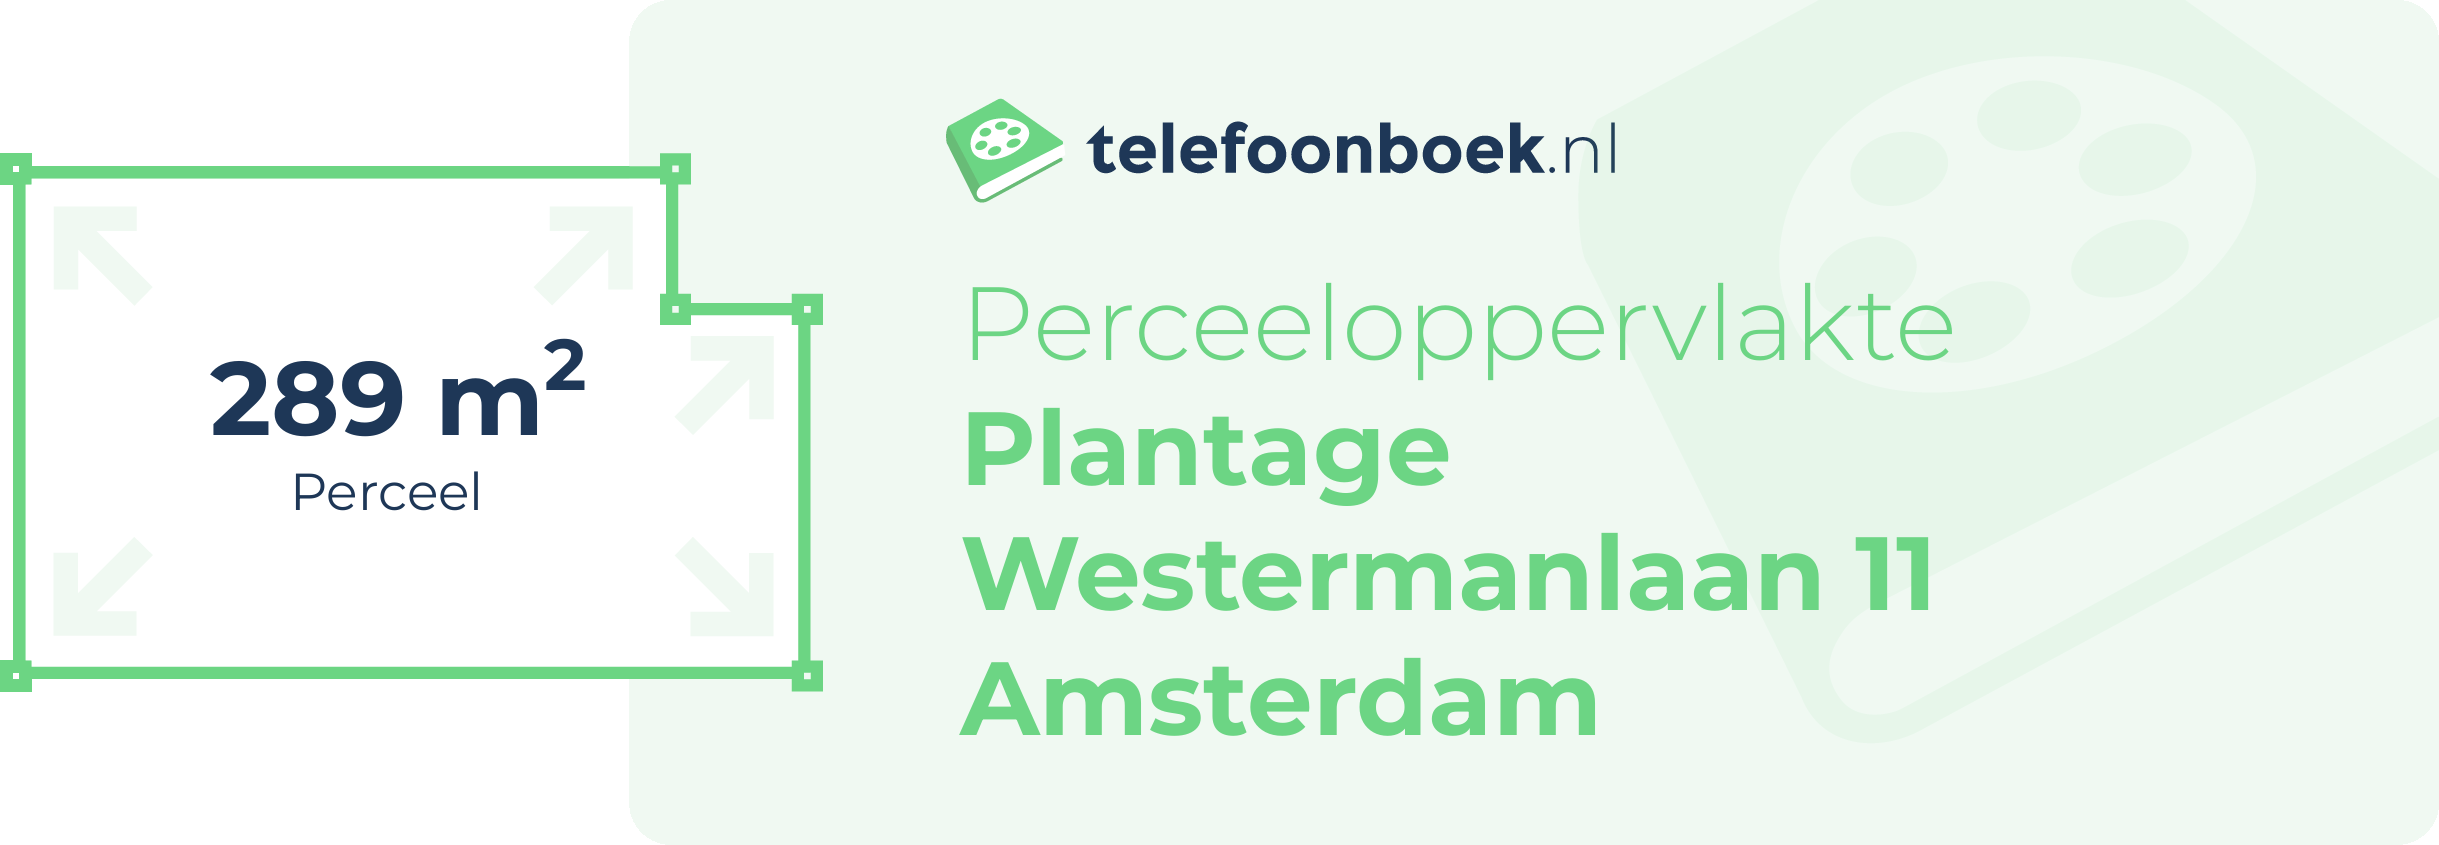 Perceeloppervlakte Plantage Westermanlaan 11 Amsterdam